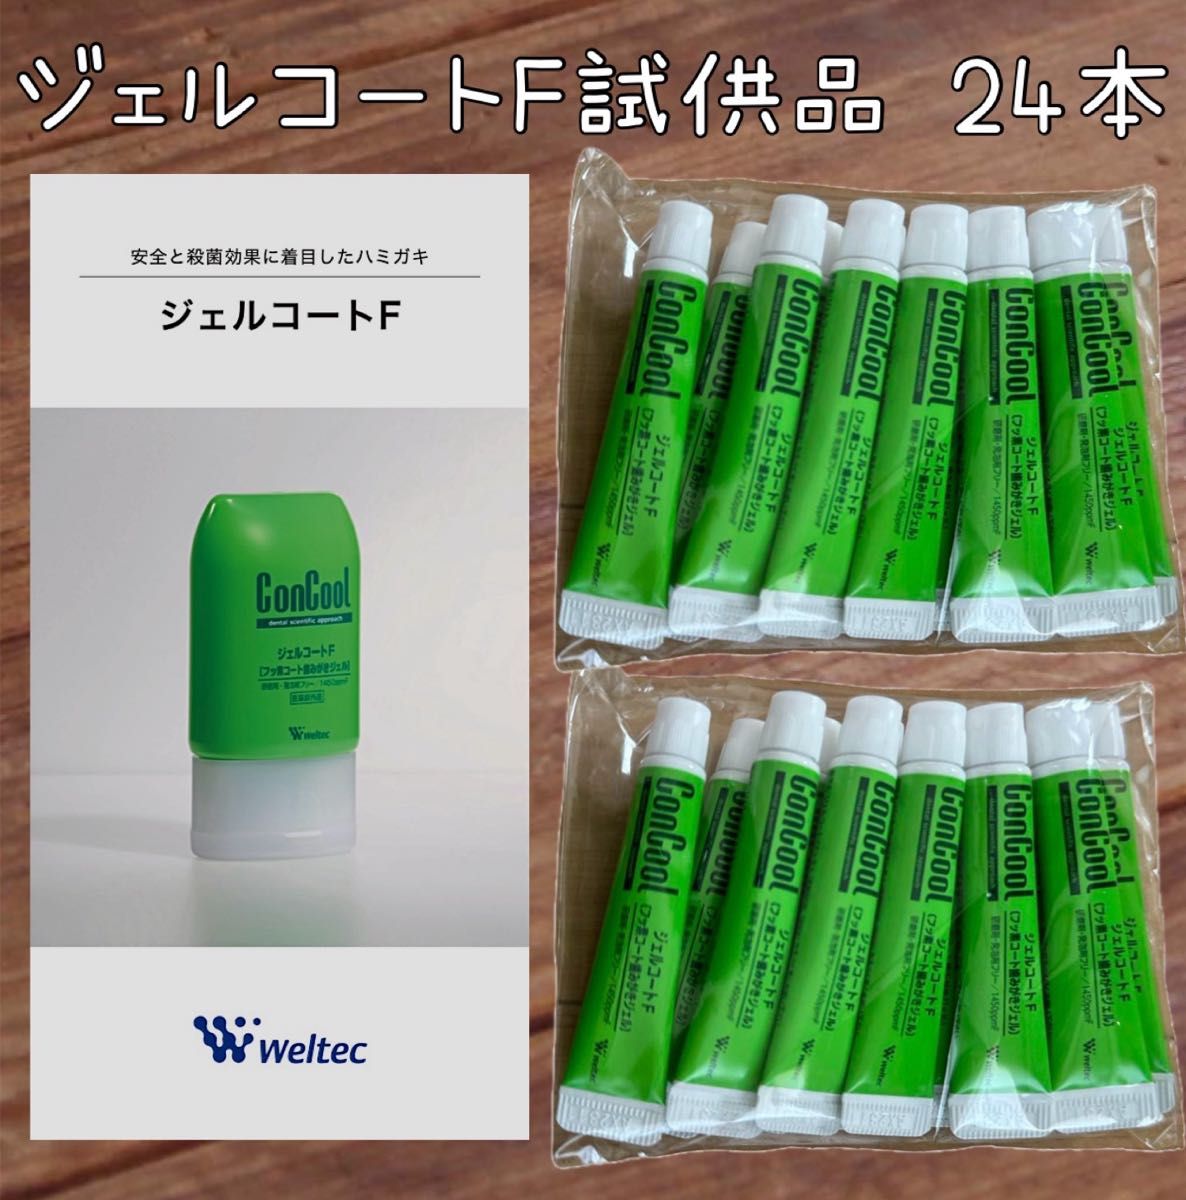 ウエルテック ジェルコートF 試供品 24本 コンクール   歯磨き粉 通常品の1.3倍の量！